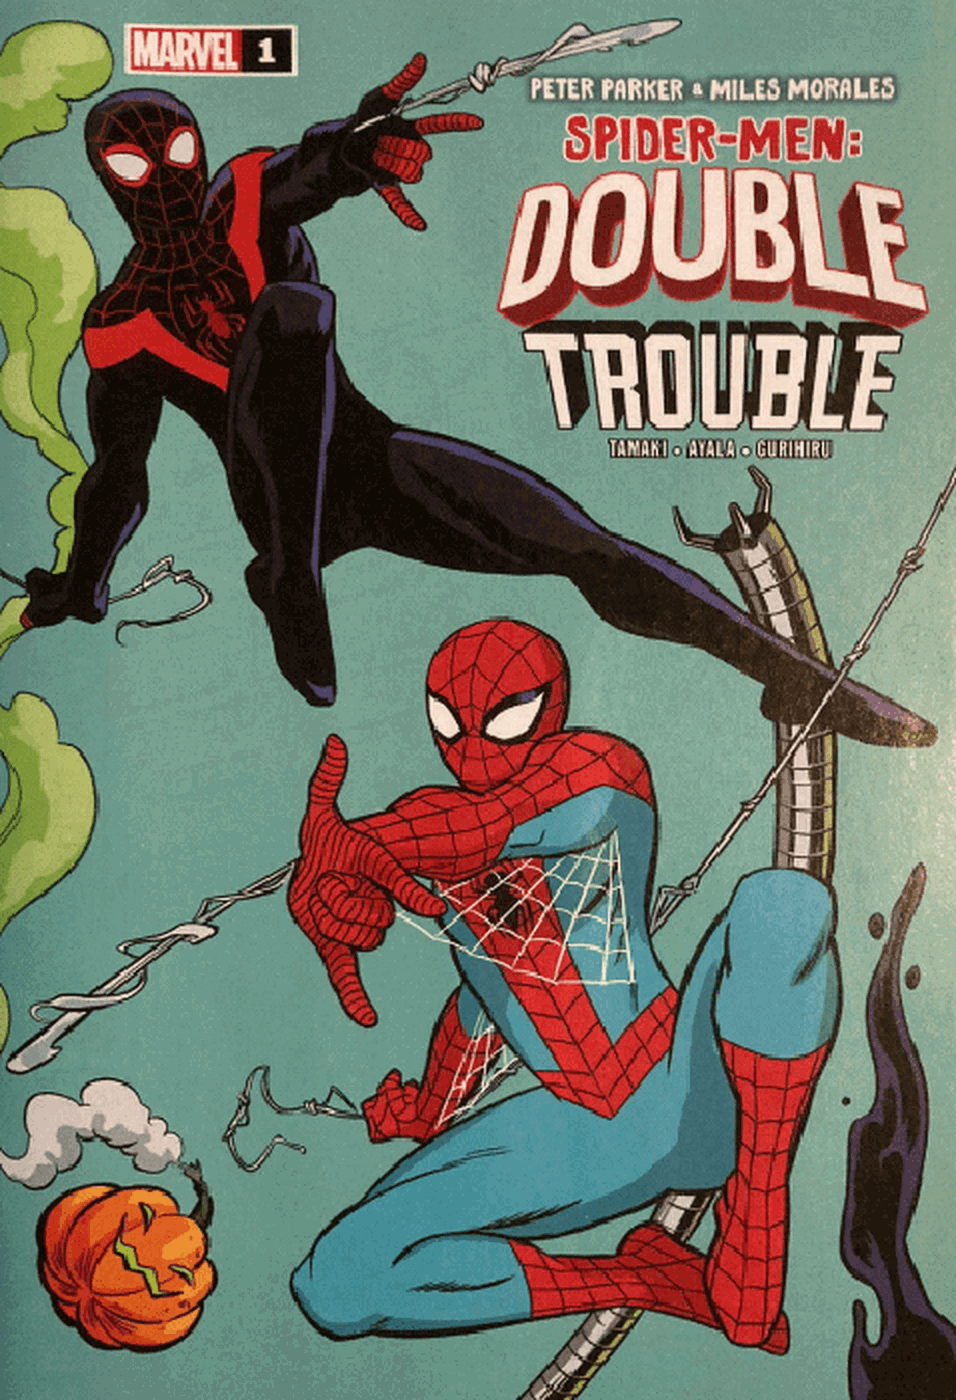 Spider-Men: Double Trouble #1 